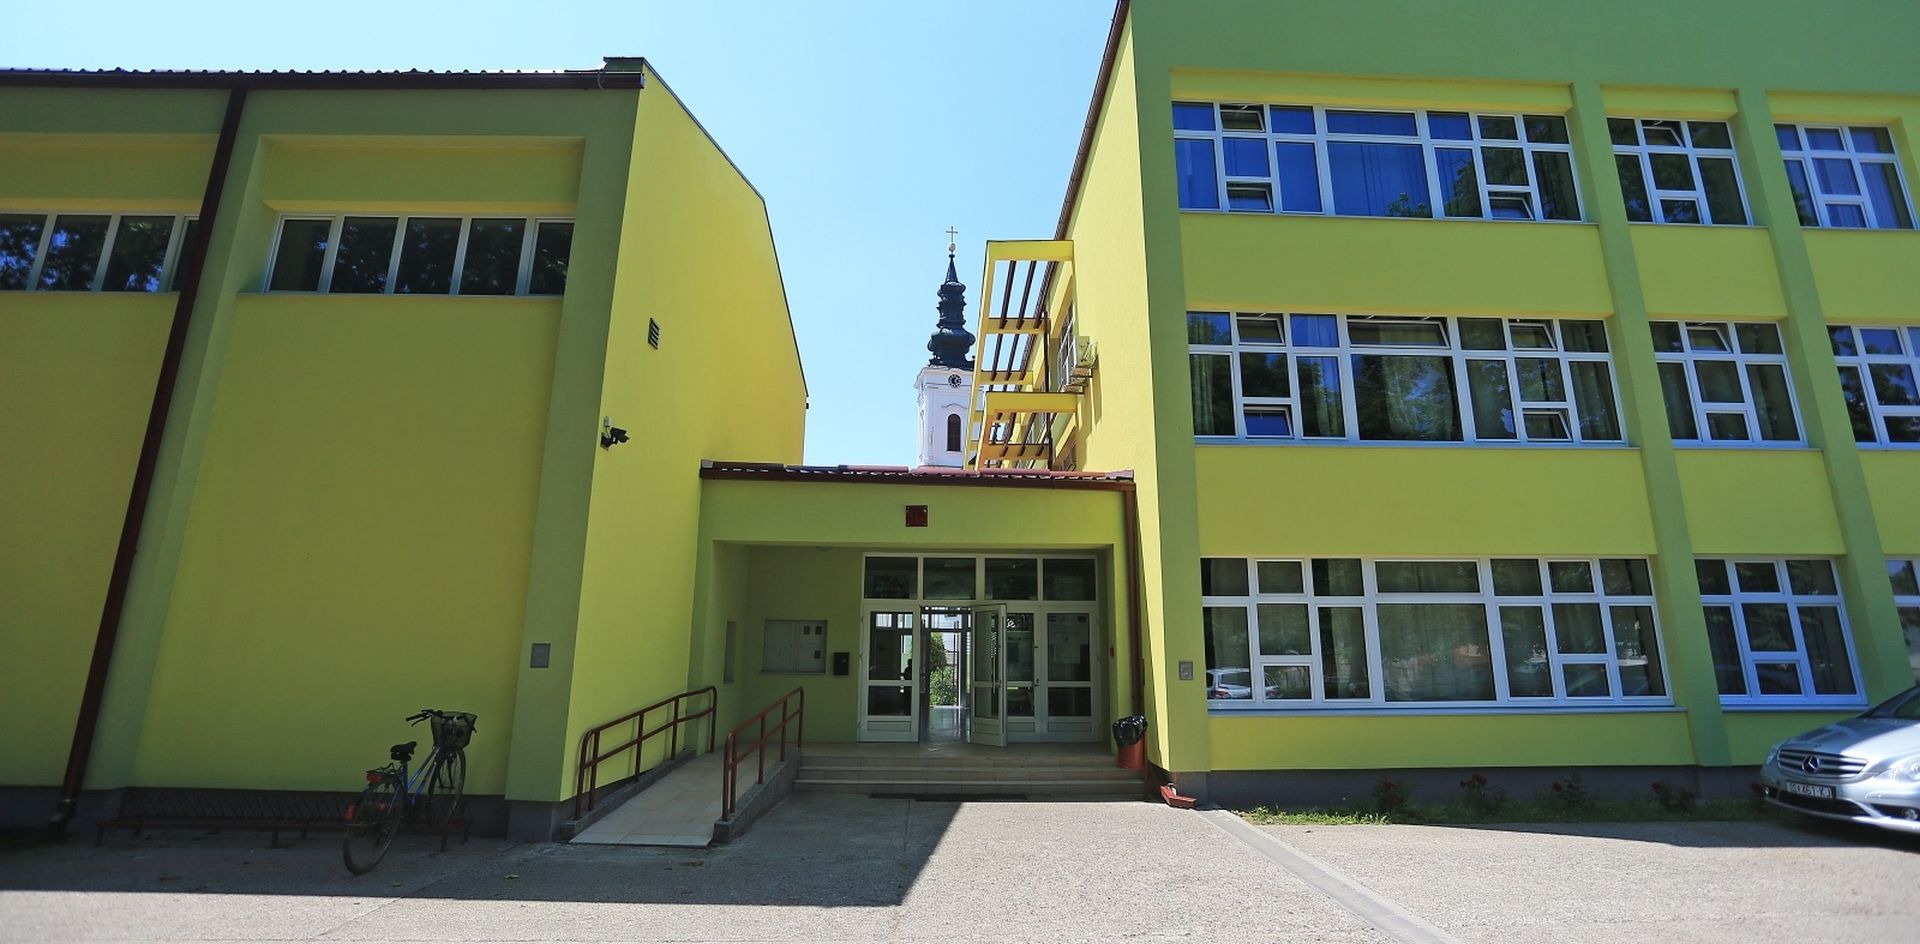 07.06.2019., Dalj - Osnovna skola Dalj. 
Photo: Davor Javorovic/PIXSELL